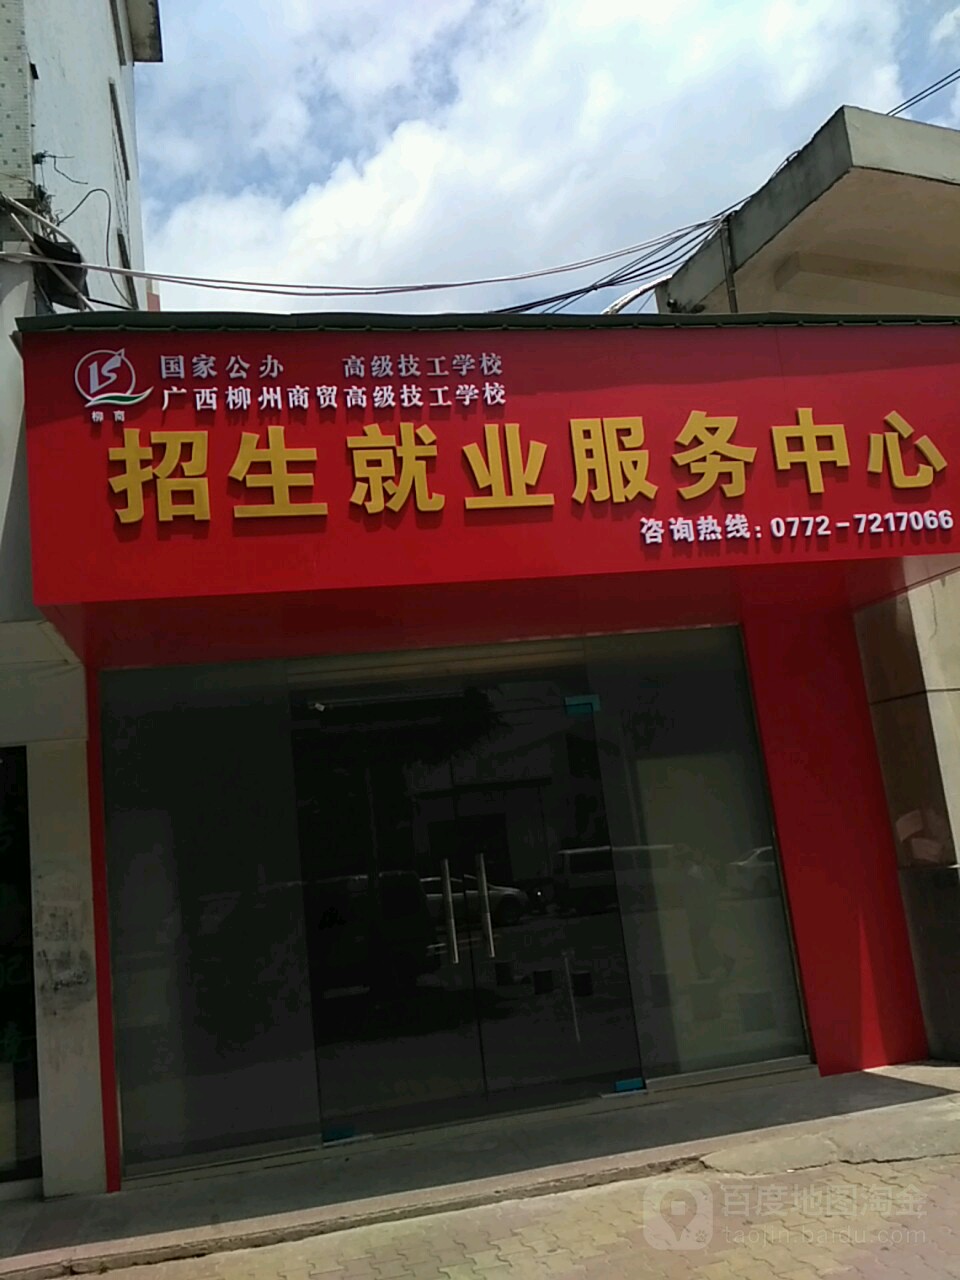 廣西柳州商貿高級技工學校招生就業服務中心